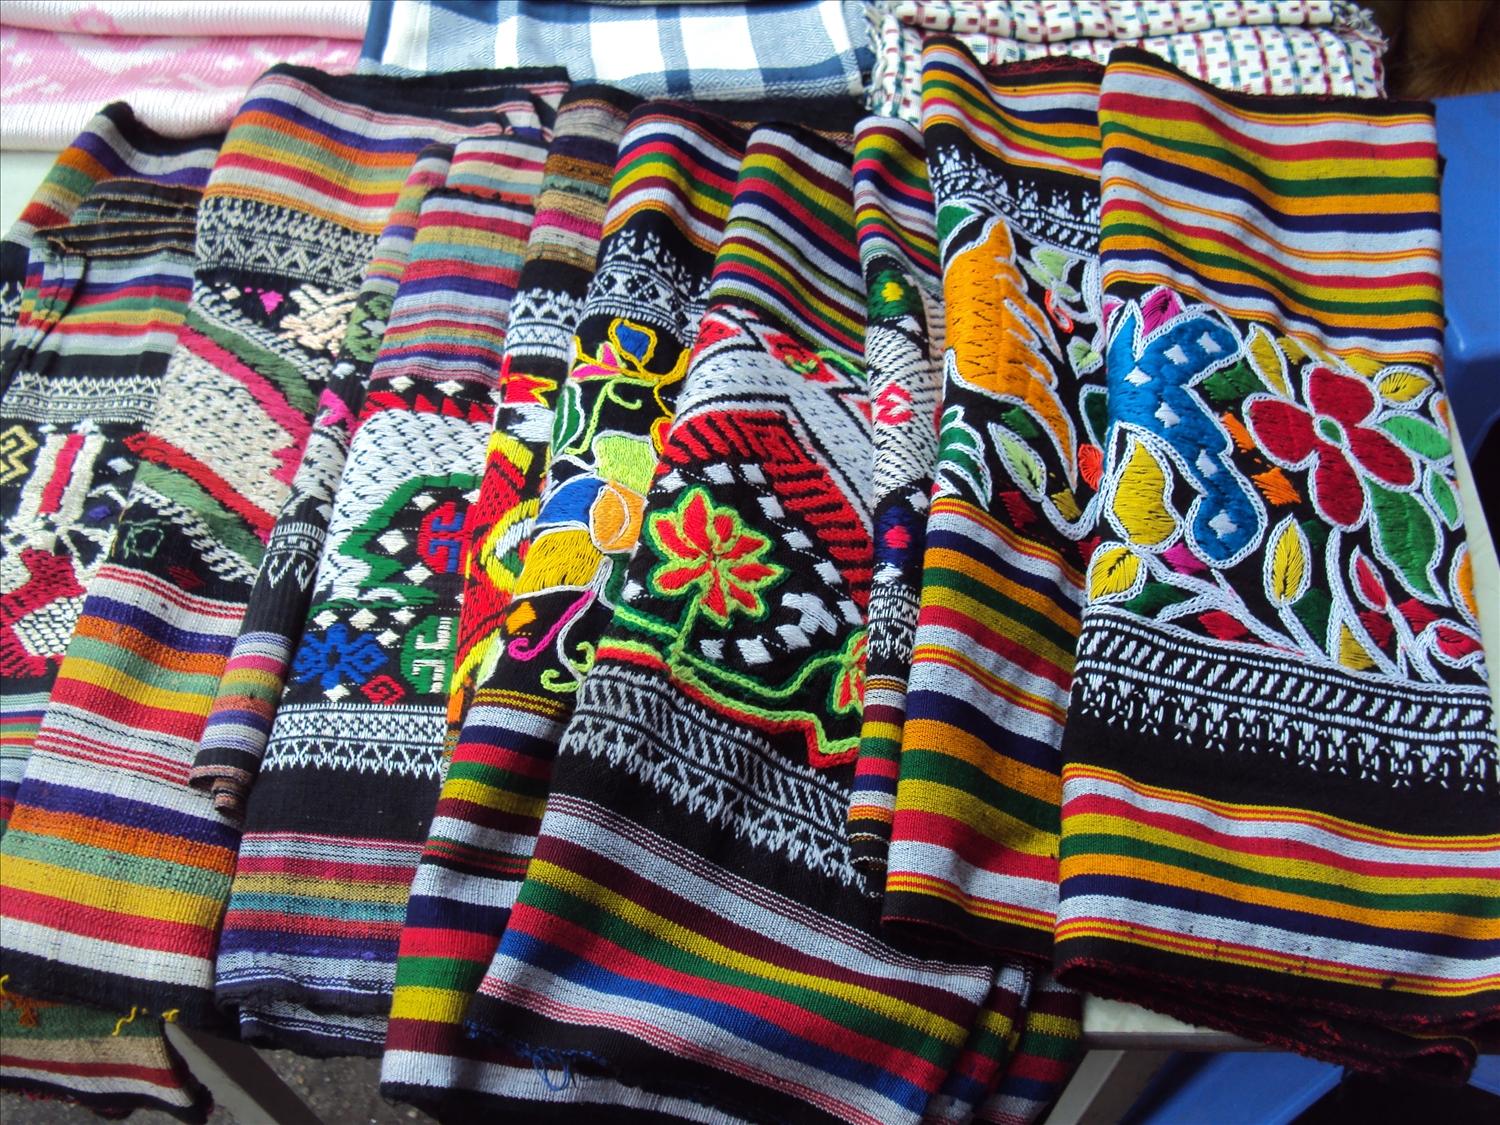 Hoa văn muôn sắc màu trên thổ cẩm dân tộc Thái